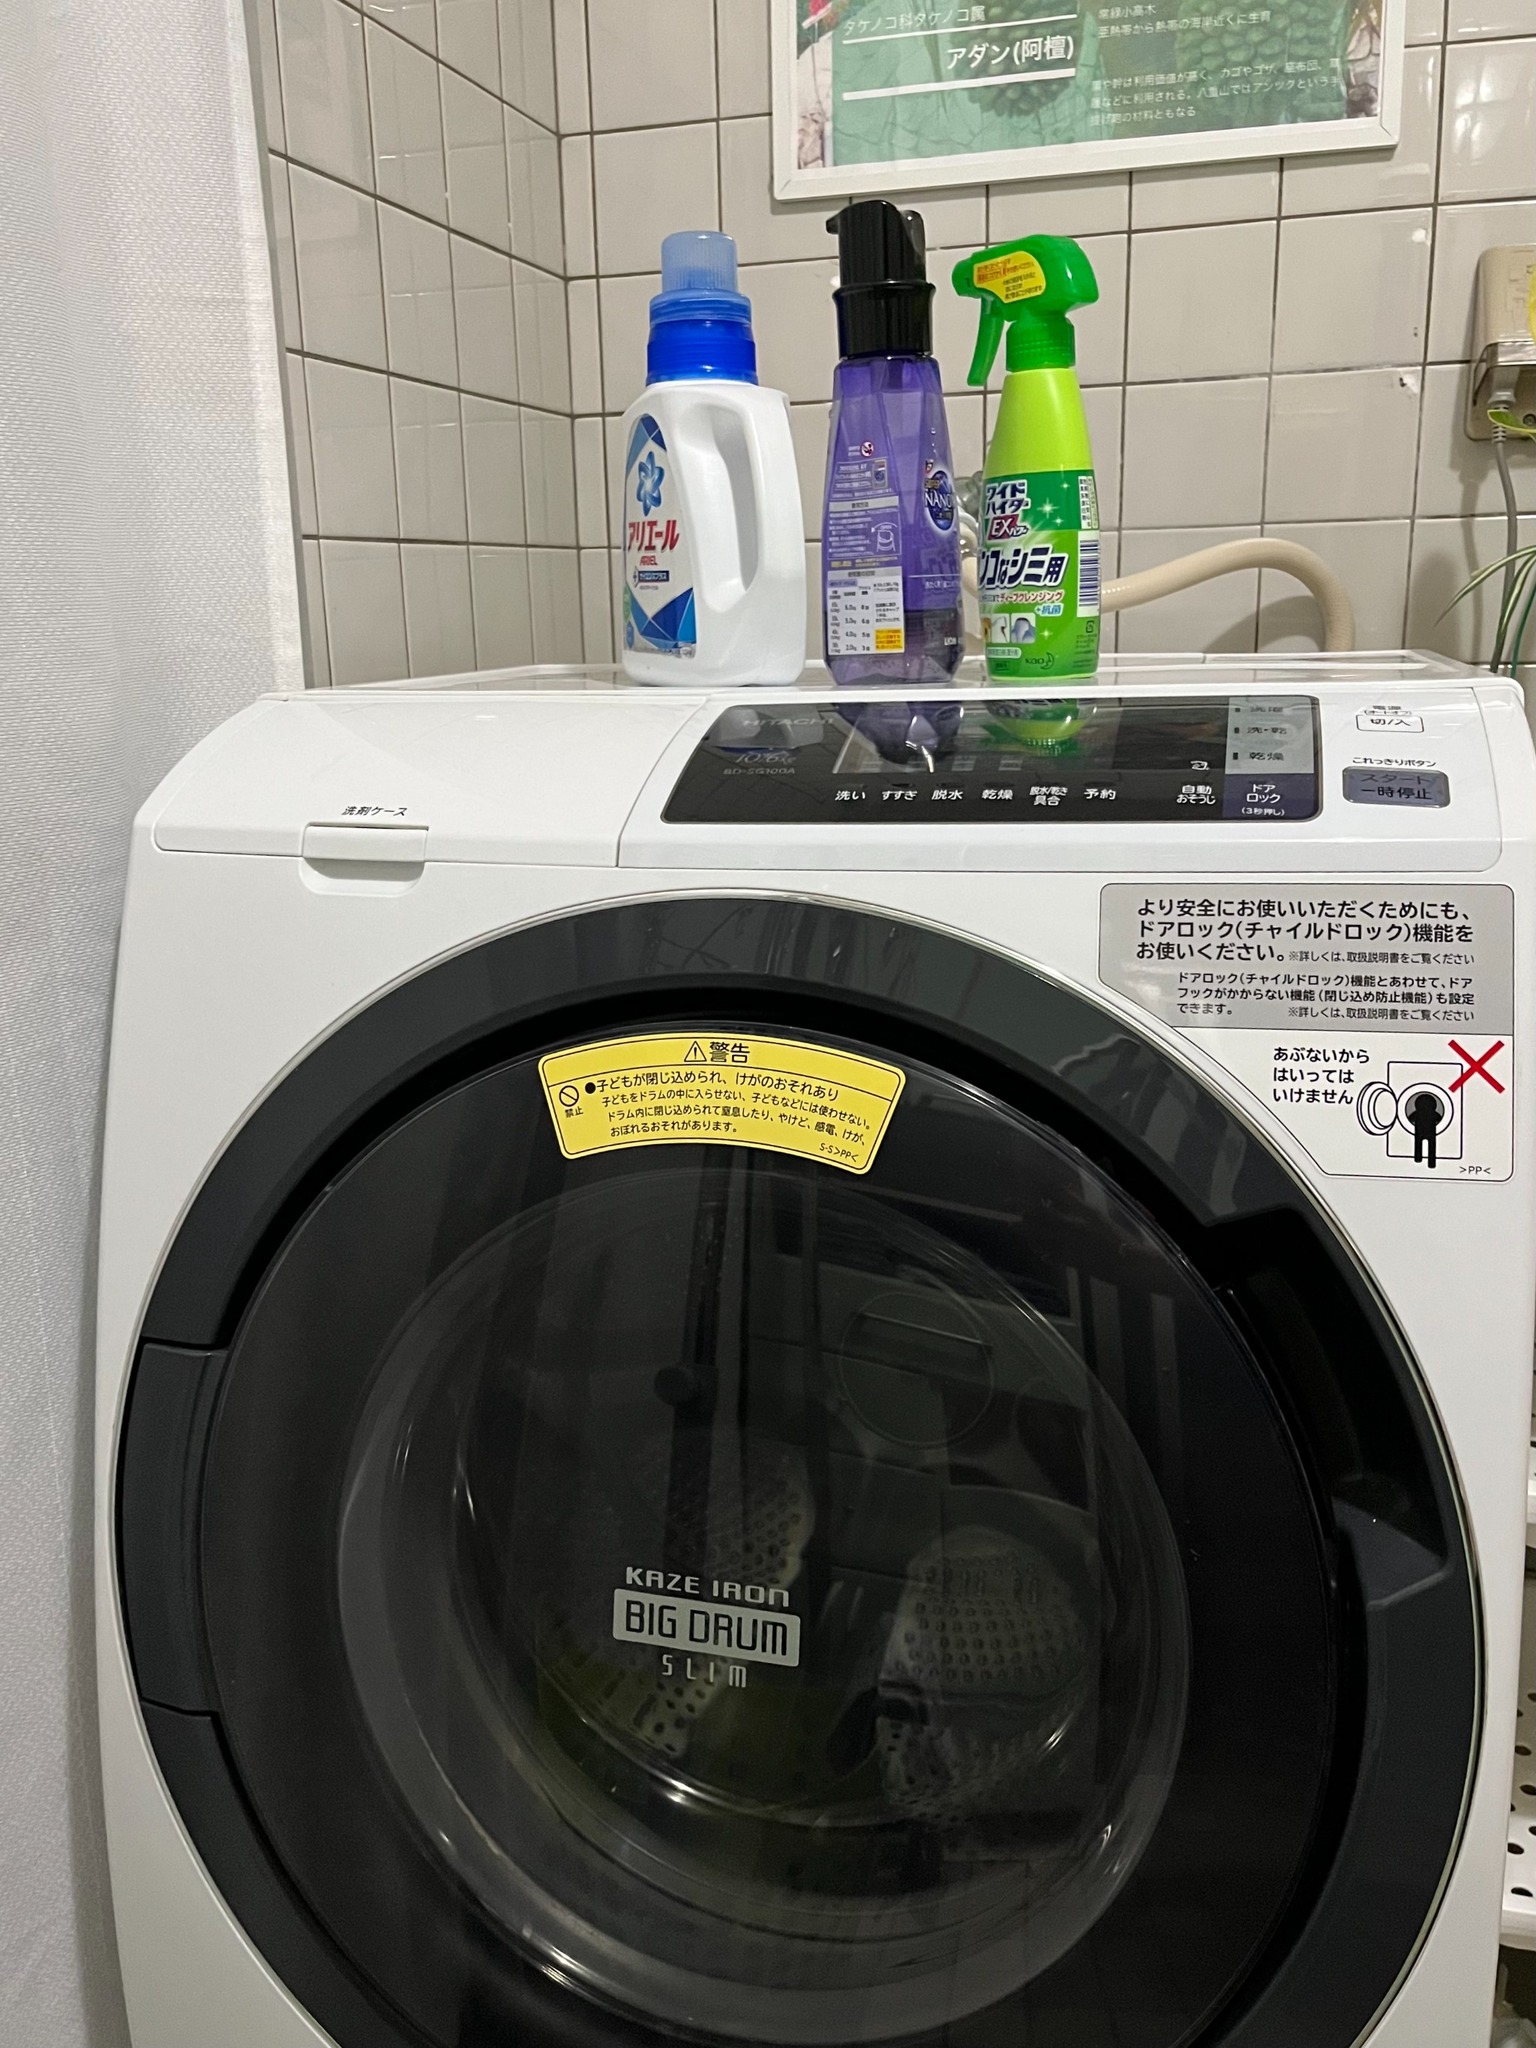 乾燥機付き洗濯機 洗剤あり Washing and Dryers machine with detergent